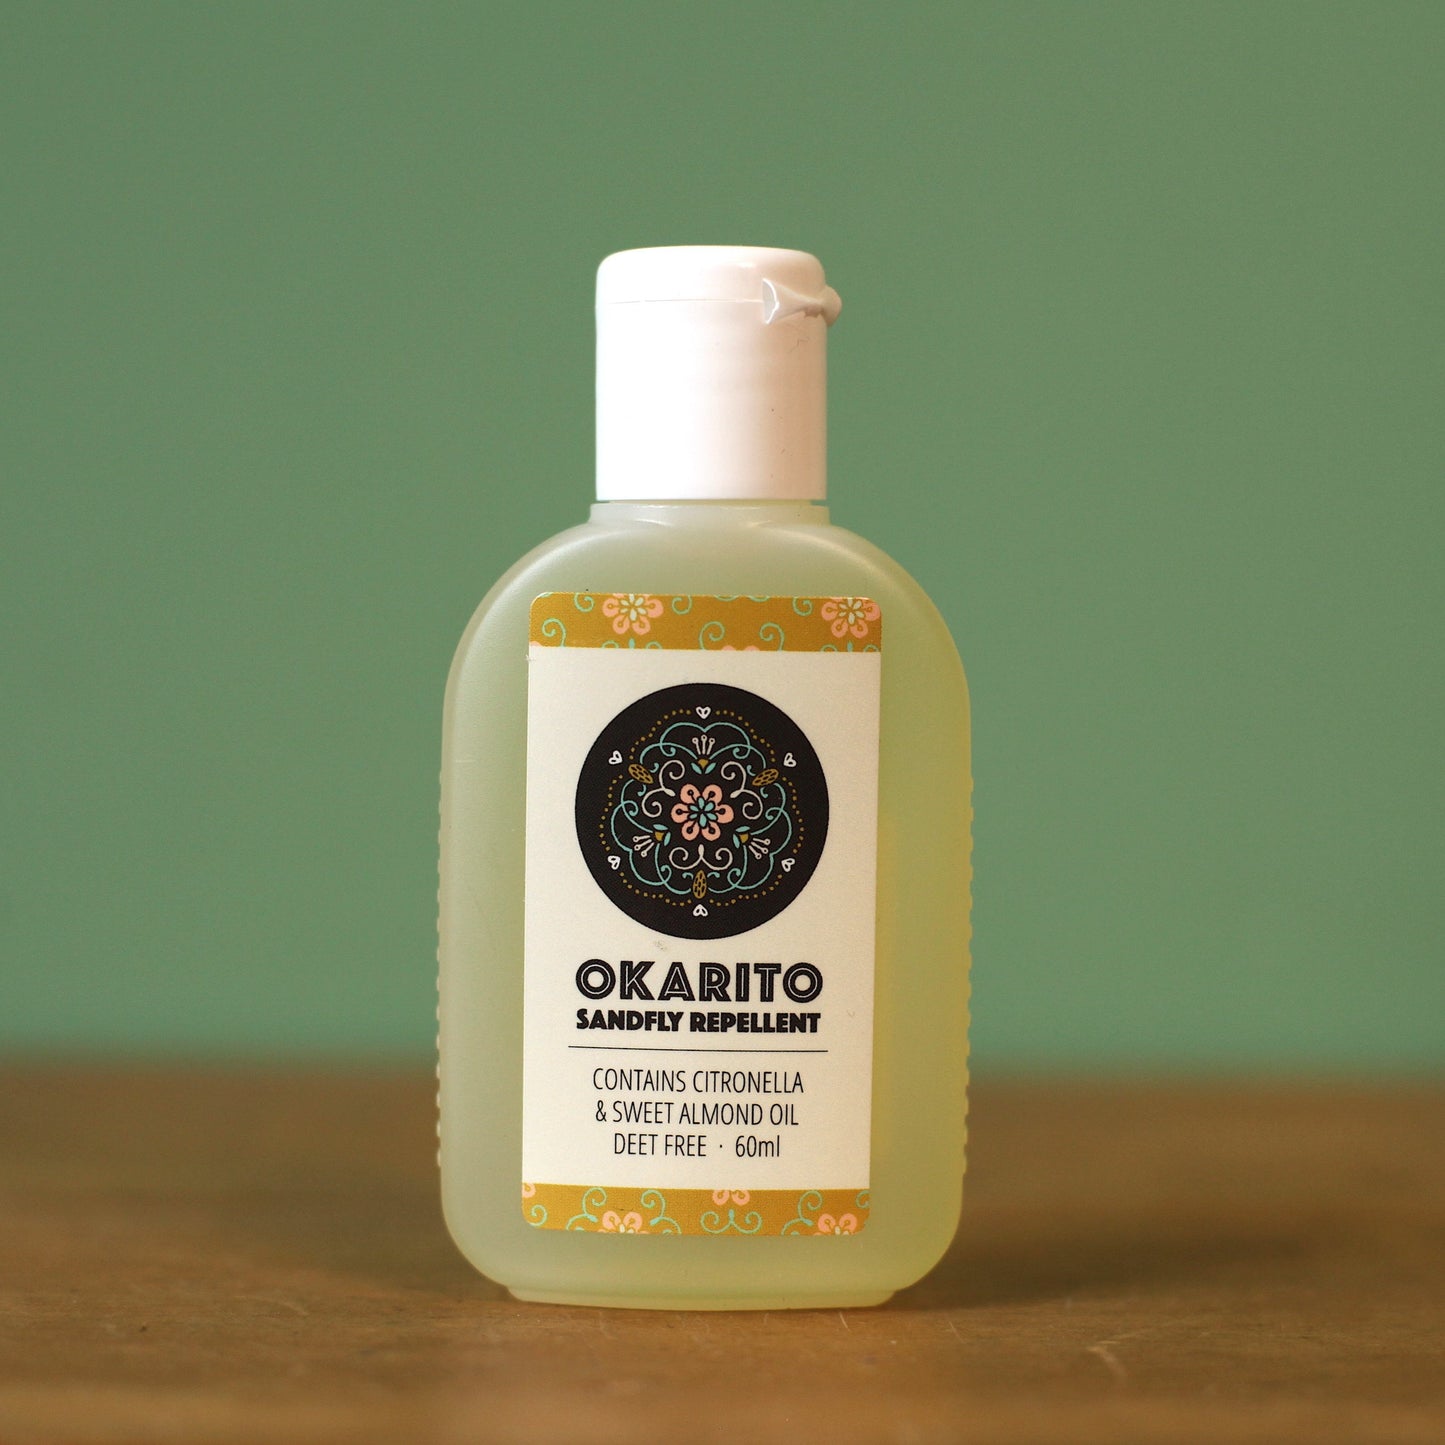 Okarito Sandfly Repellent